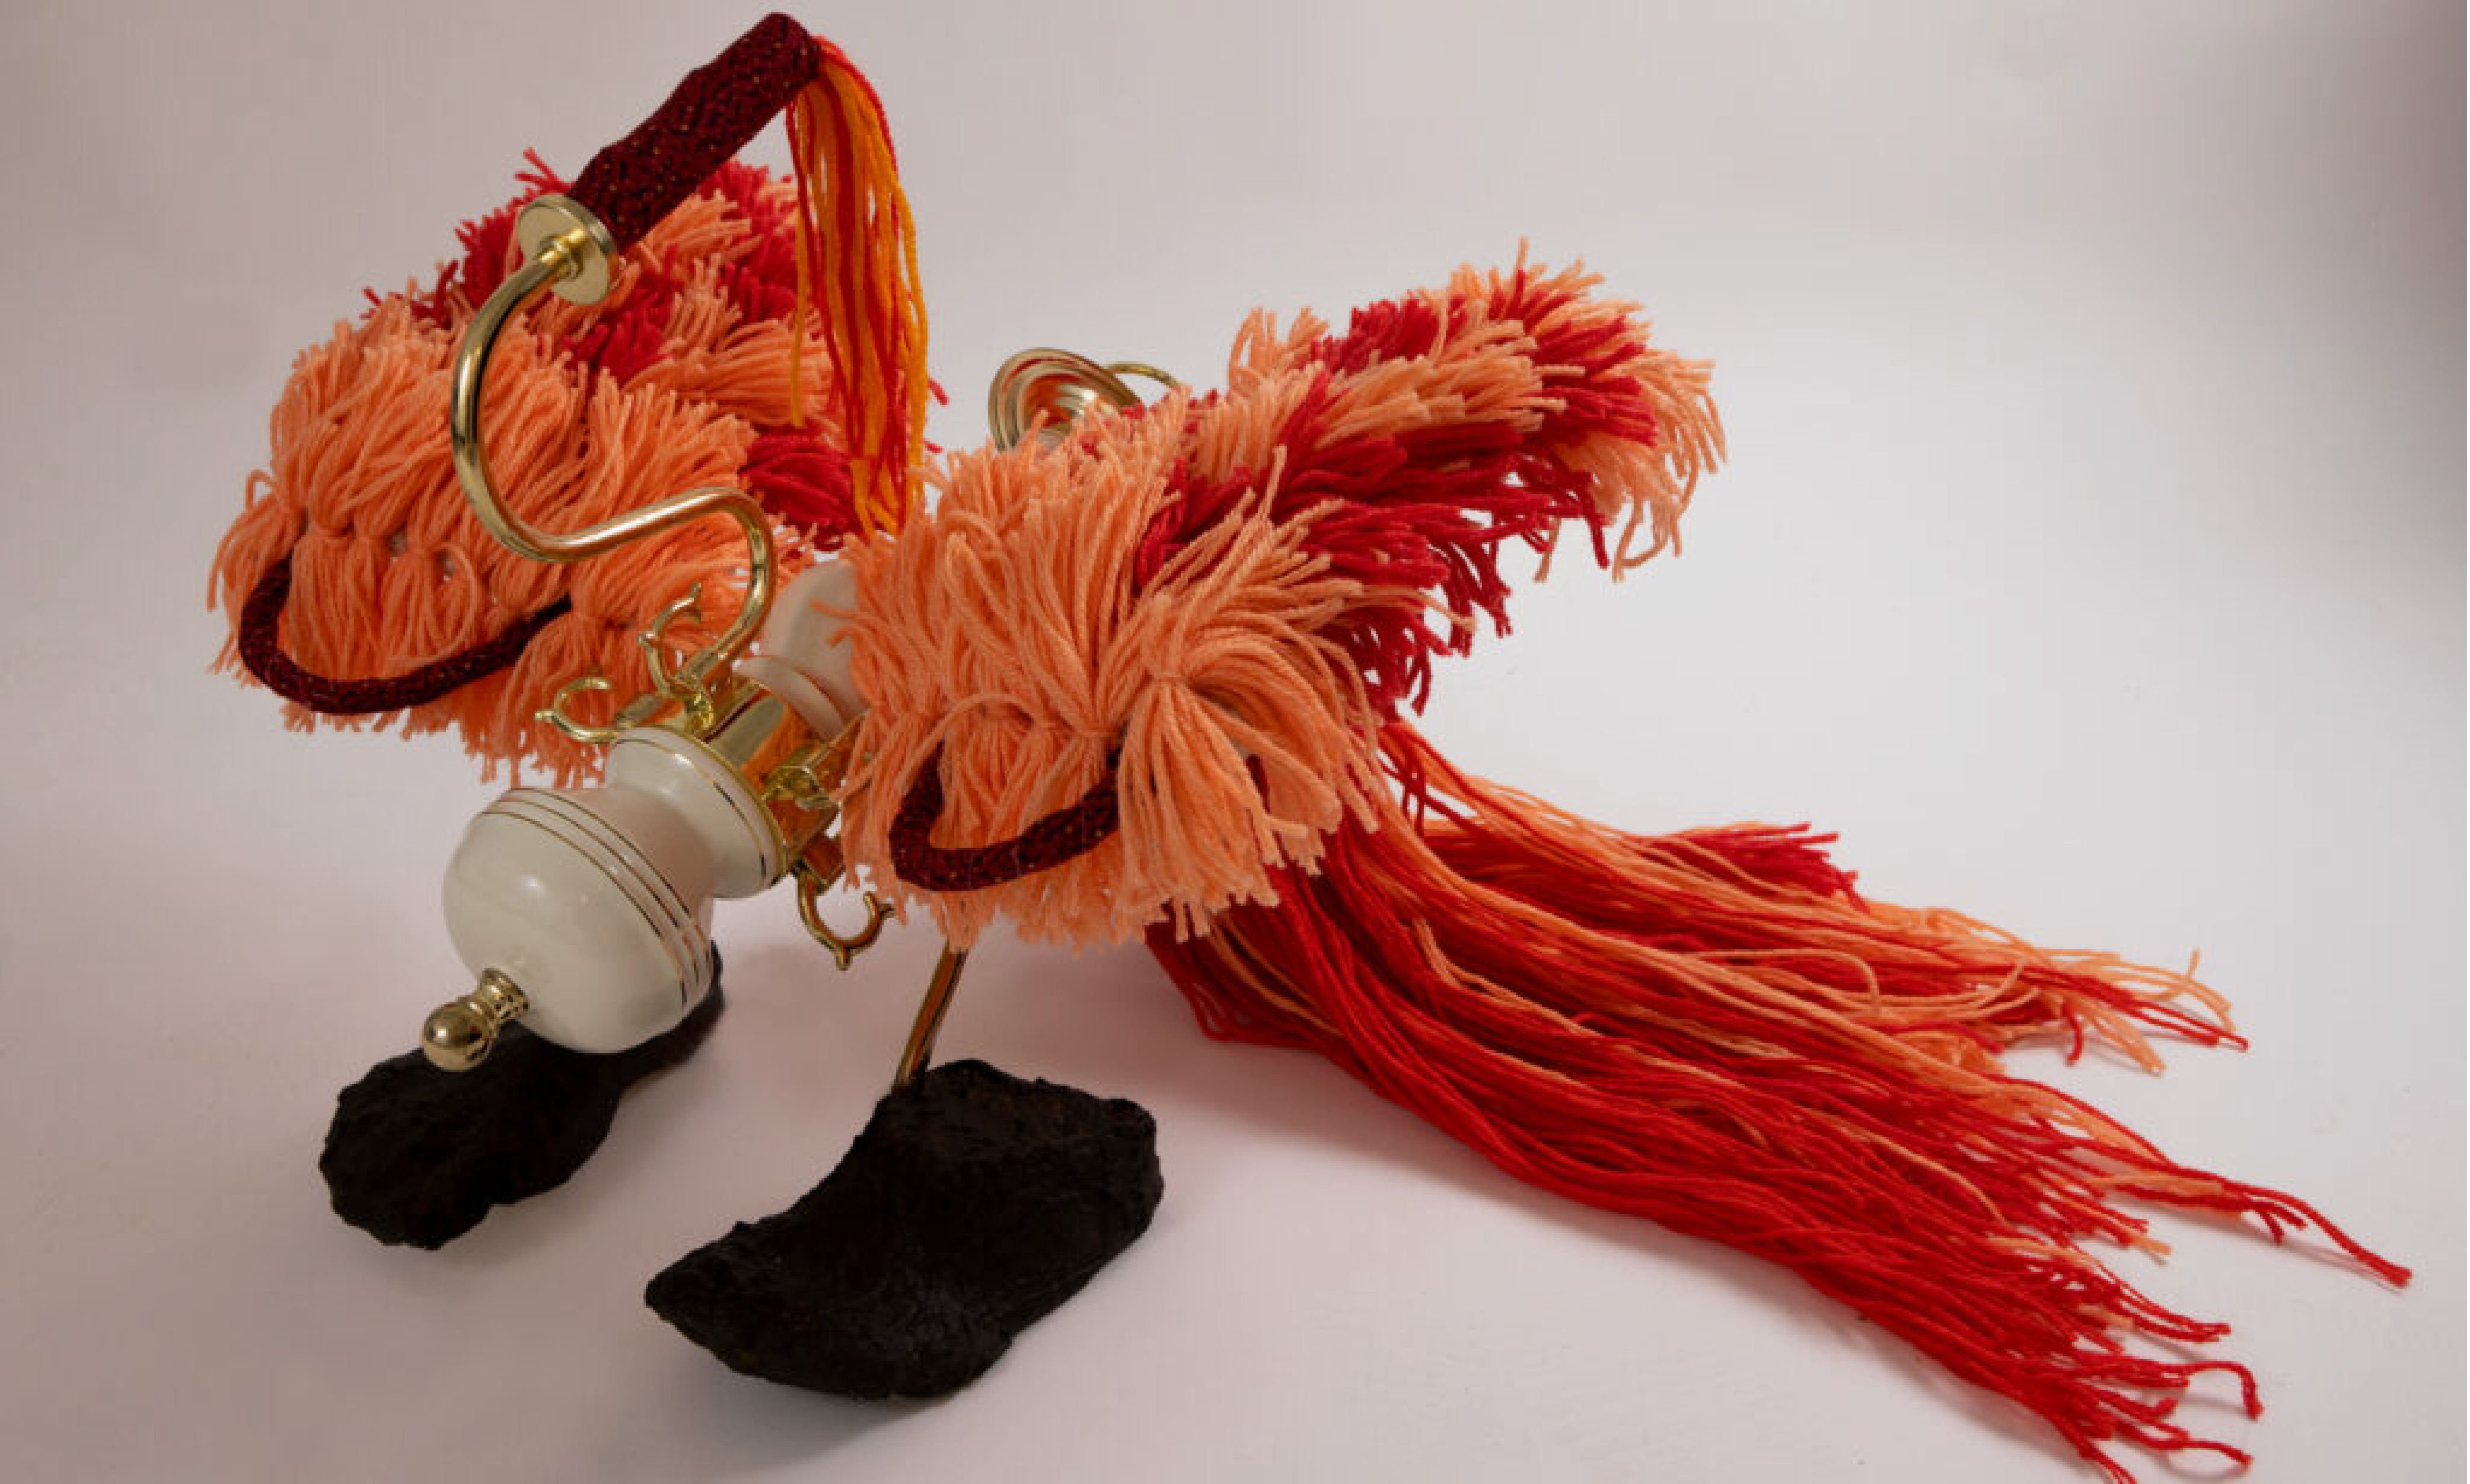 Yulin Yuan, ZhuQue. Chandelier, casted feet, yarn, fabric 20"x30."